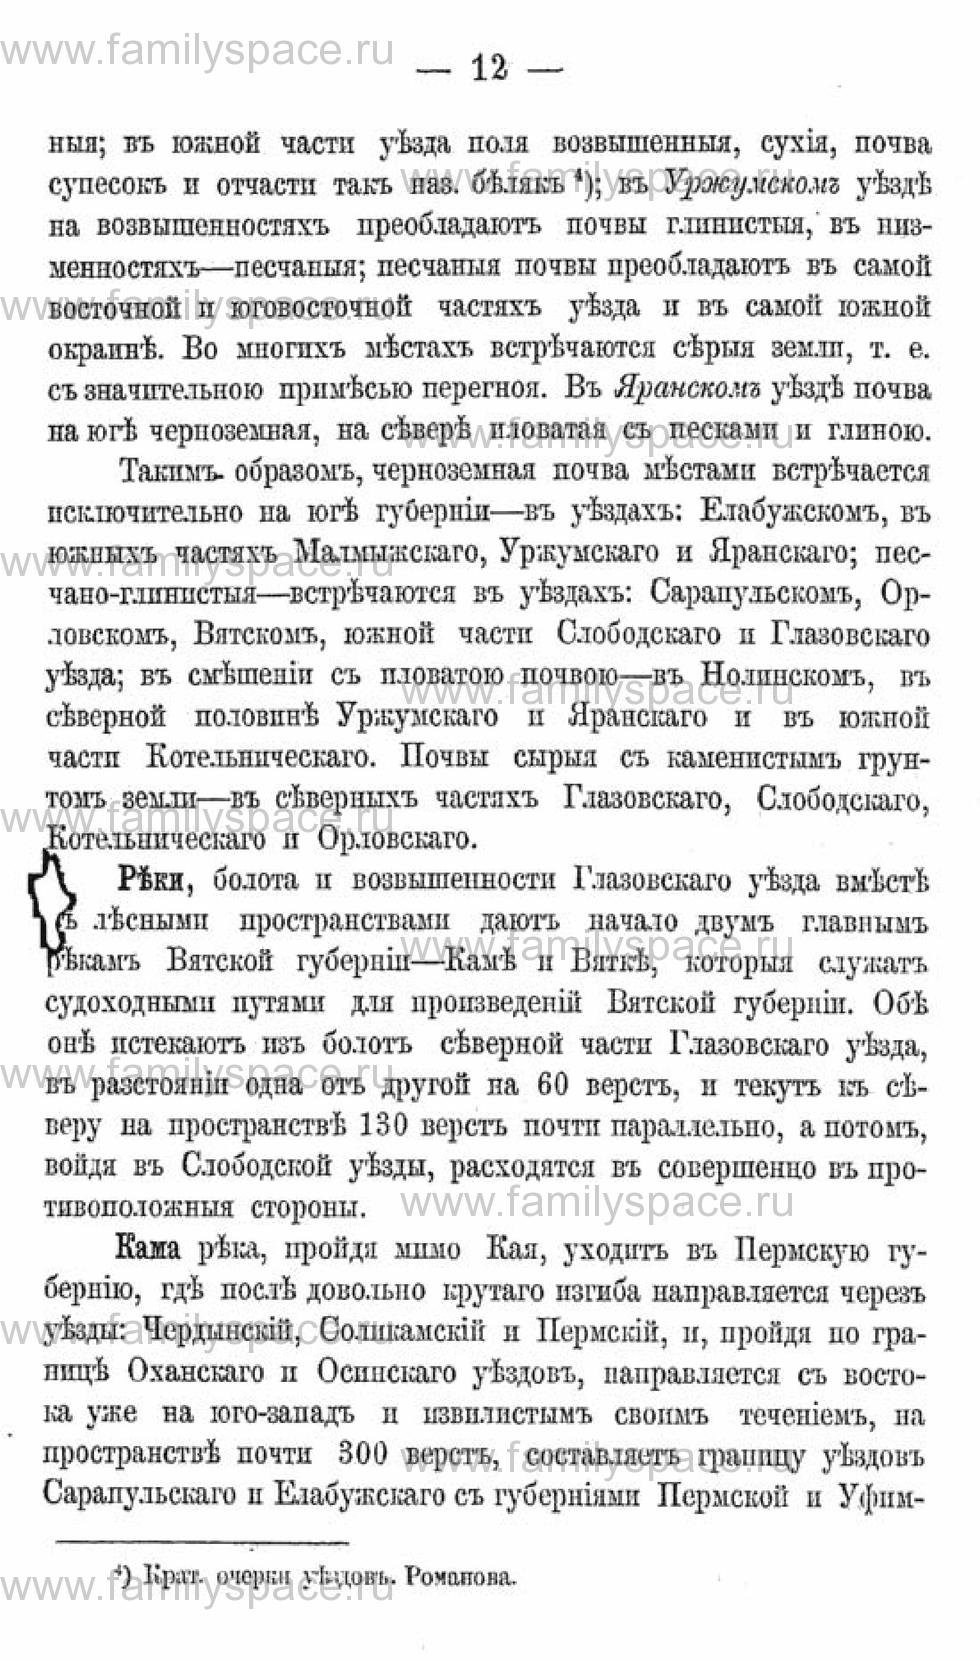 Поиск по фамилии - Календарь Вятской губернии - 1880, страница 2012